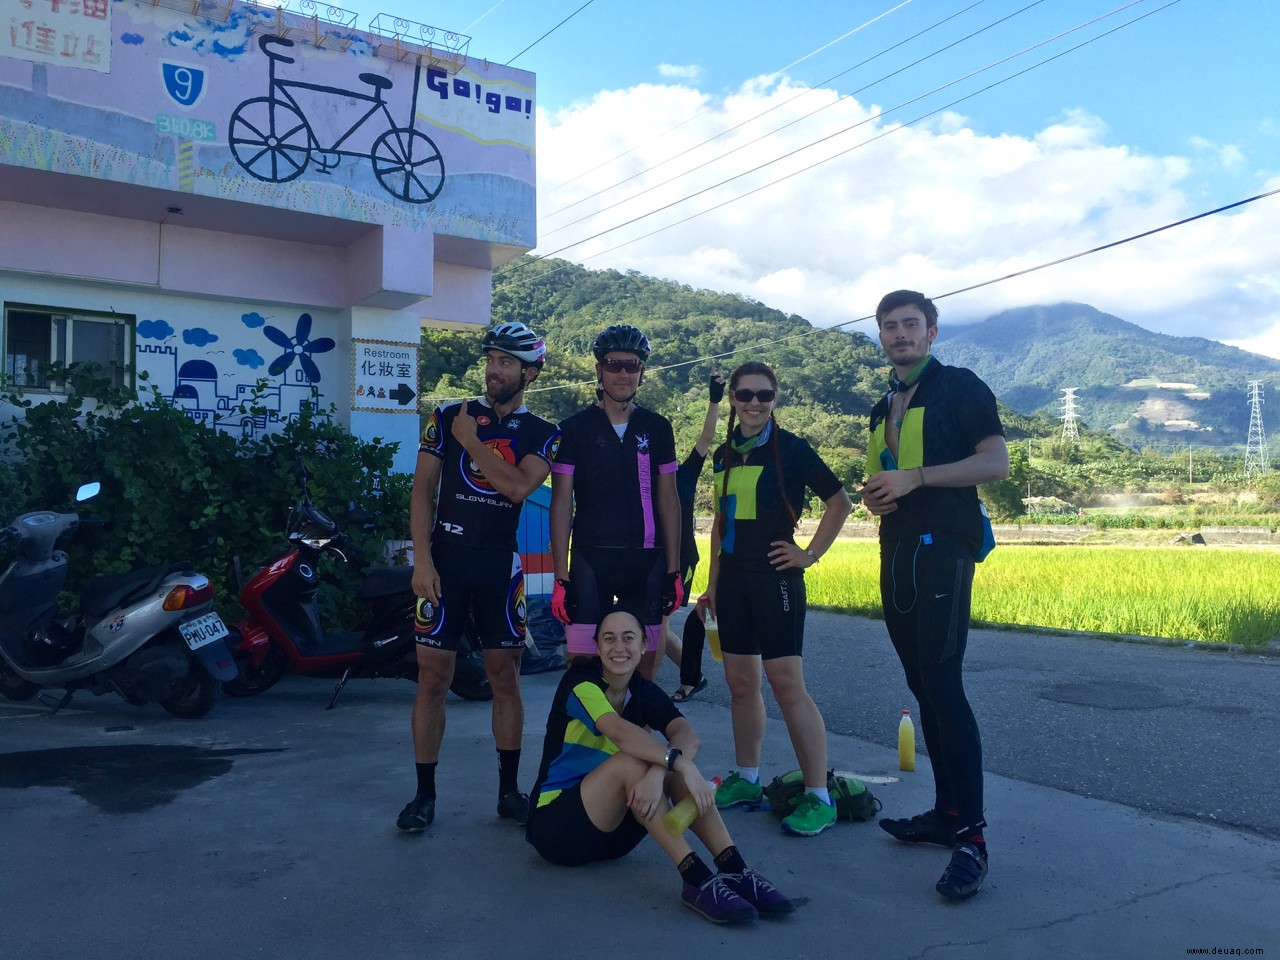 Riesen in Taiwan:Radfahren in Taiwan 